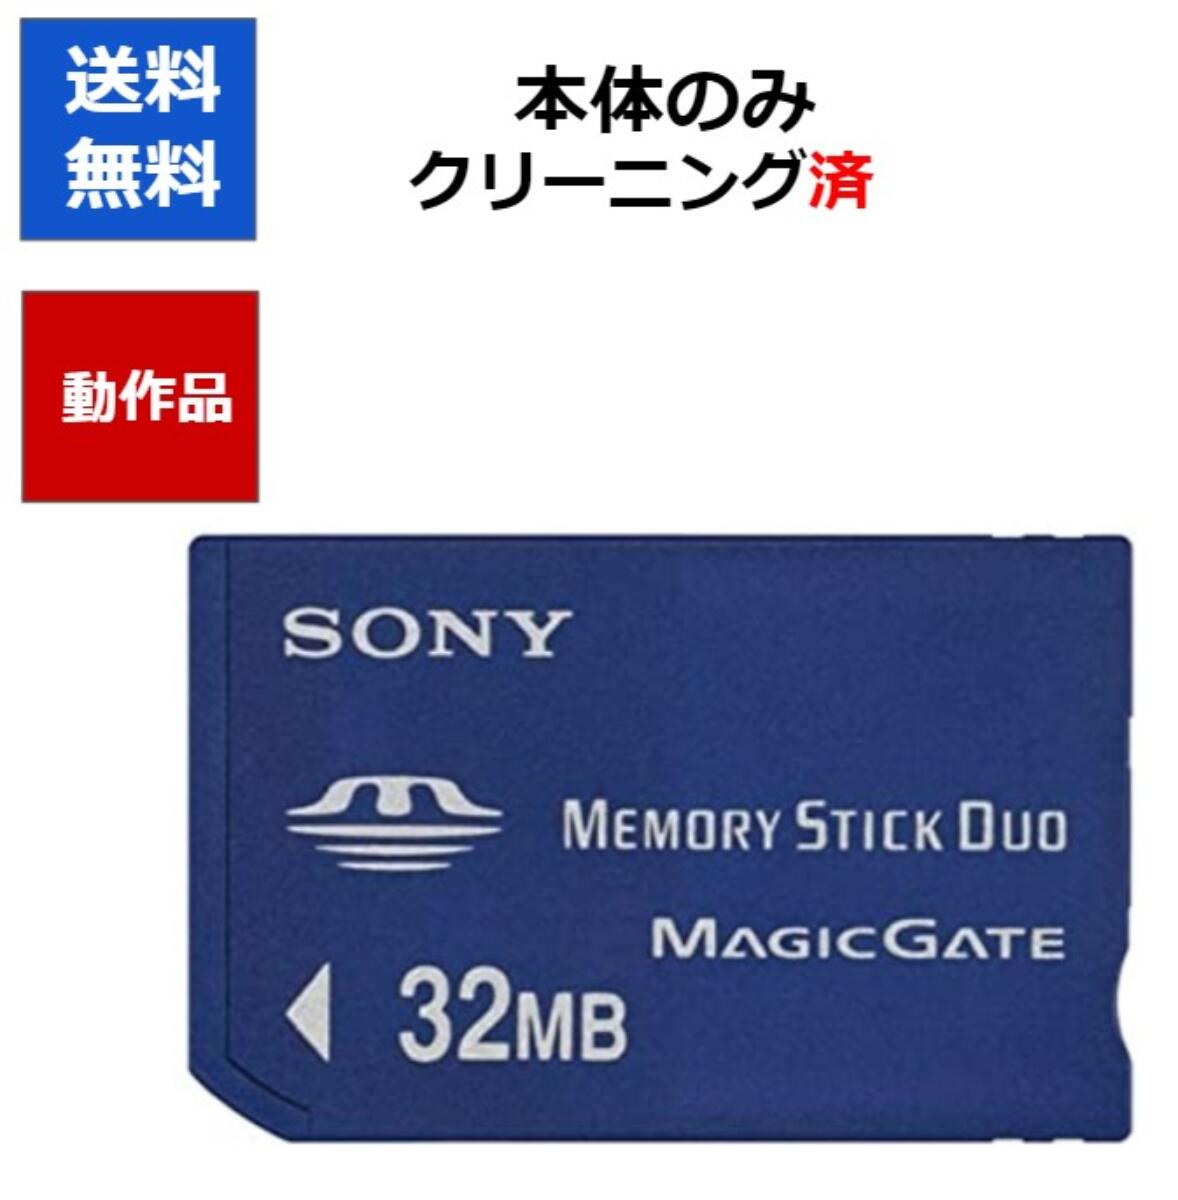 【レビューキャンペーン実施中!】SONY PSP メモリースティック PRO デュオ 32MB 【中 ...